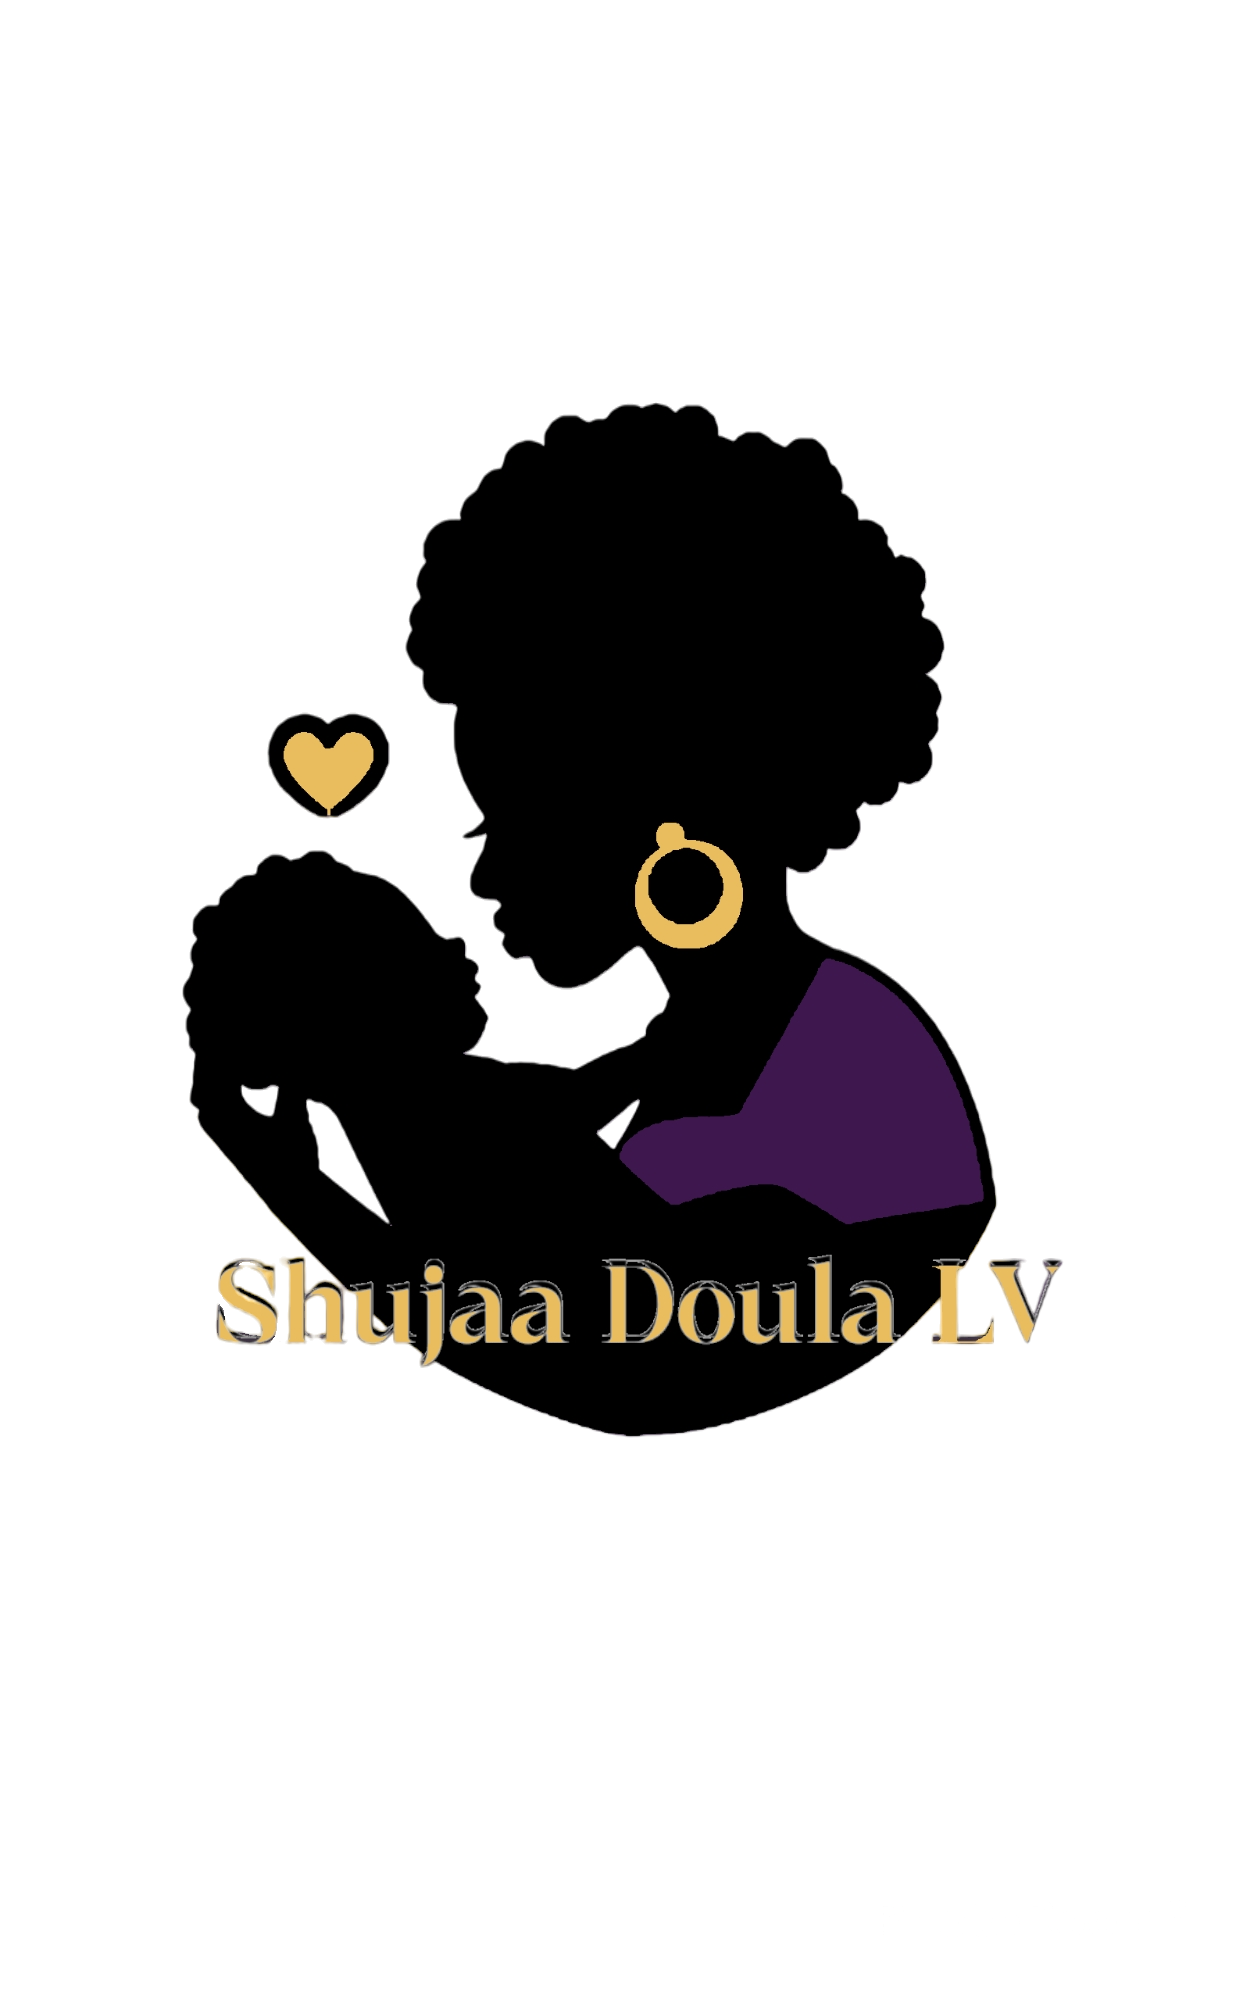 Shujaa Doula LV